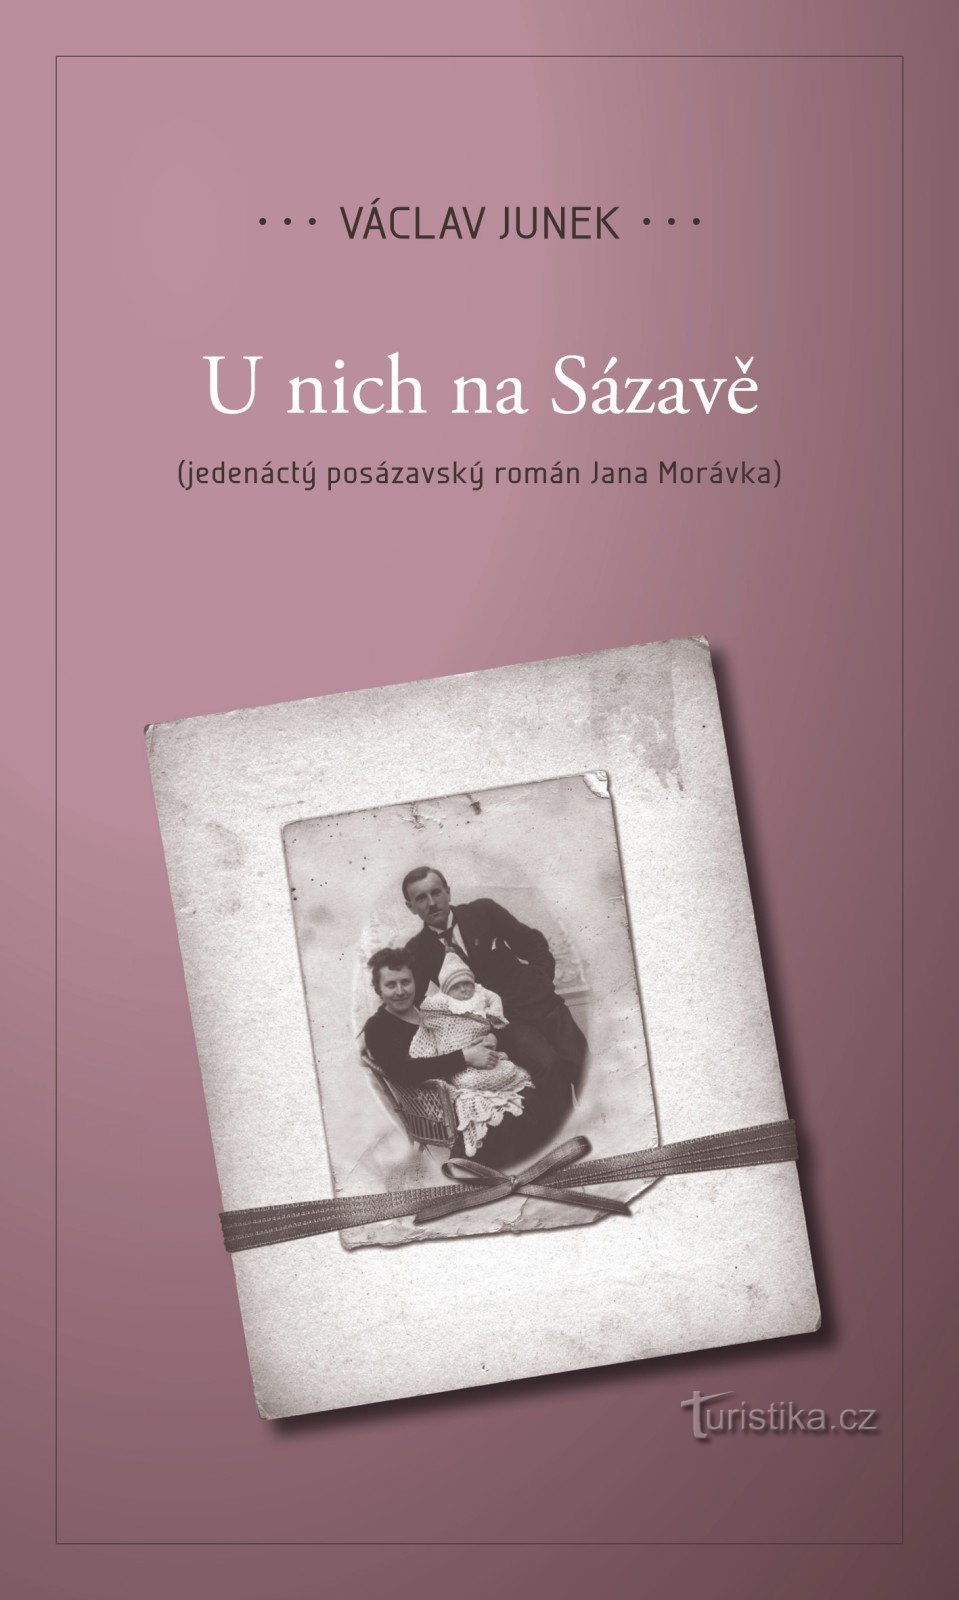 ヴァーツラフ・ユンカの第XNUMX作『U nich Na Sázavá』をお届けします。